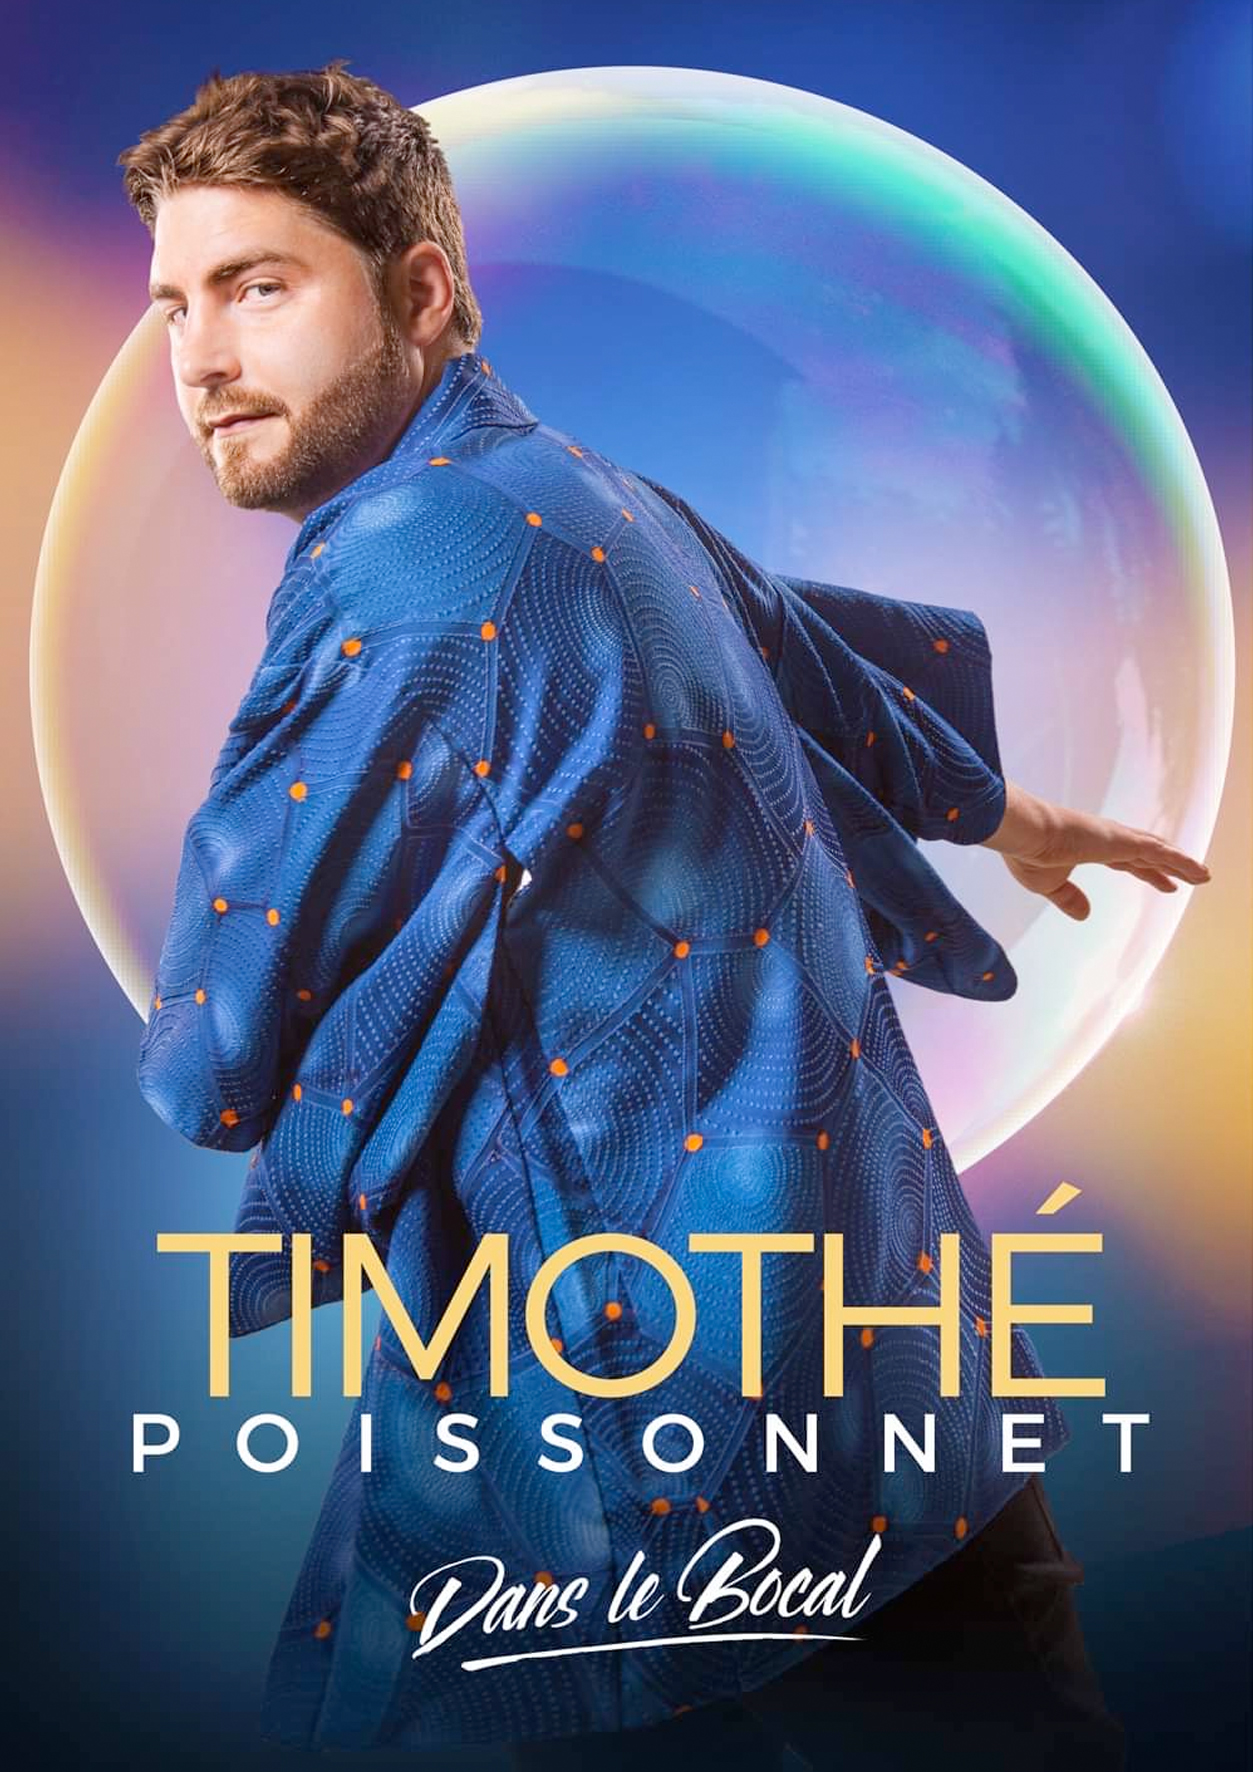 Timothé Poissonnet dans le Bocal